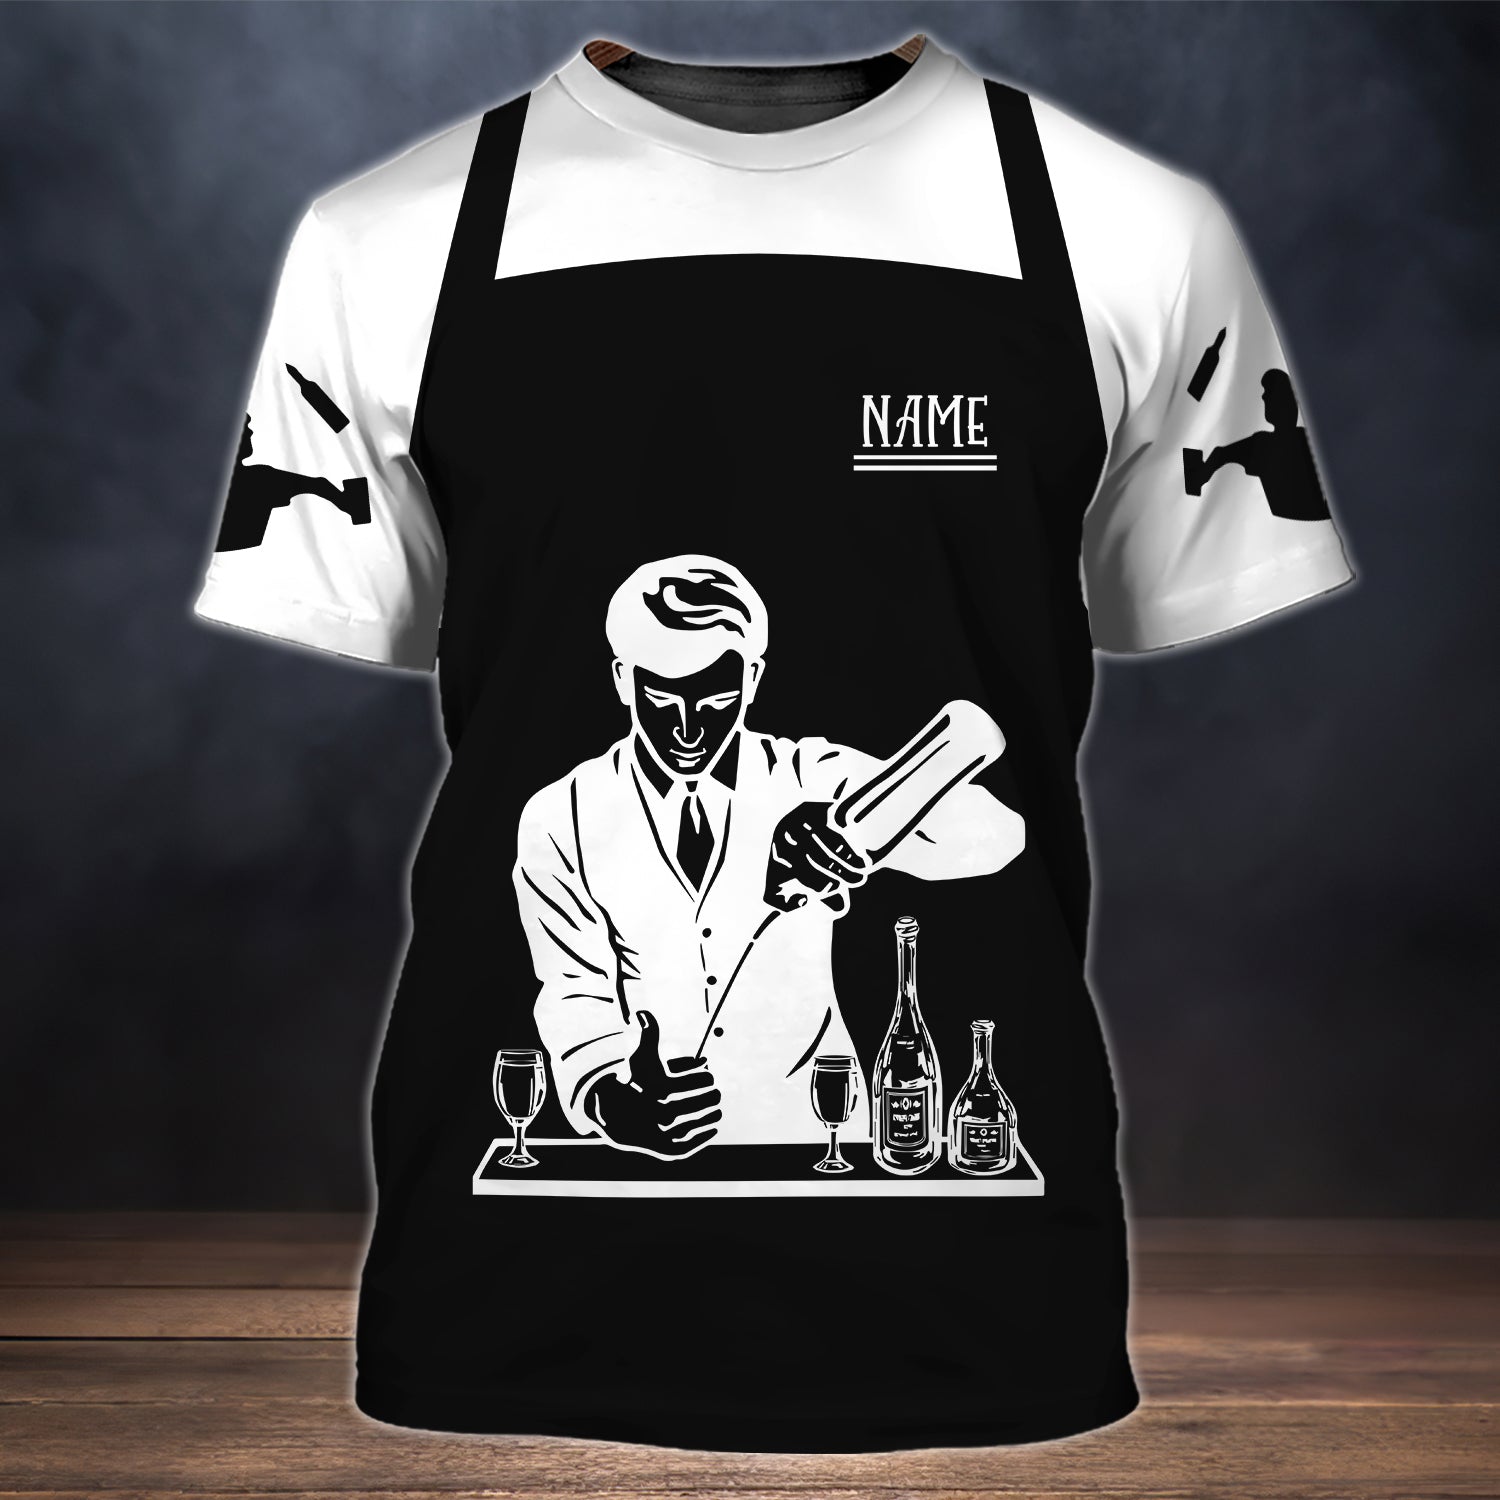 Custom Bartender 3D T Shirt/ Barista Shirts/ Bartender Mafia Shirts